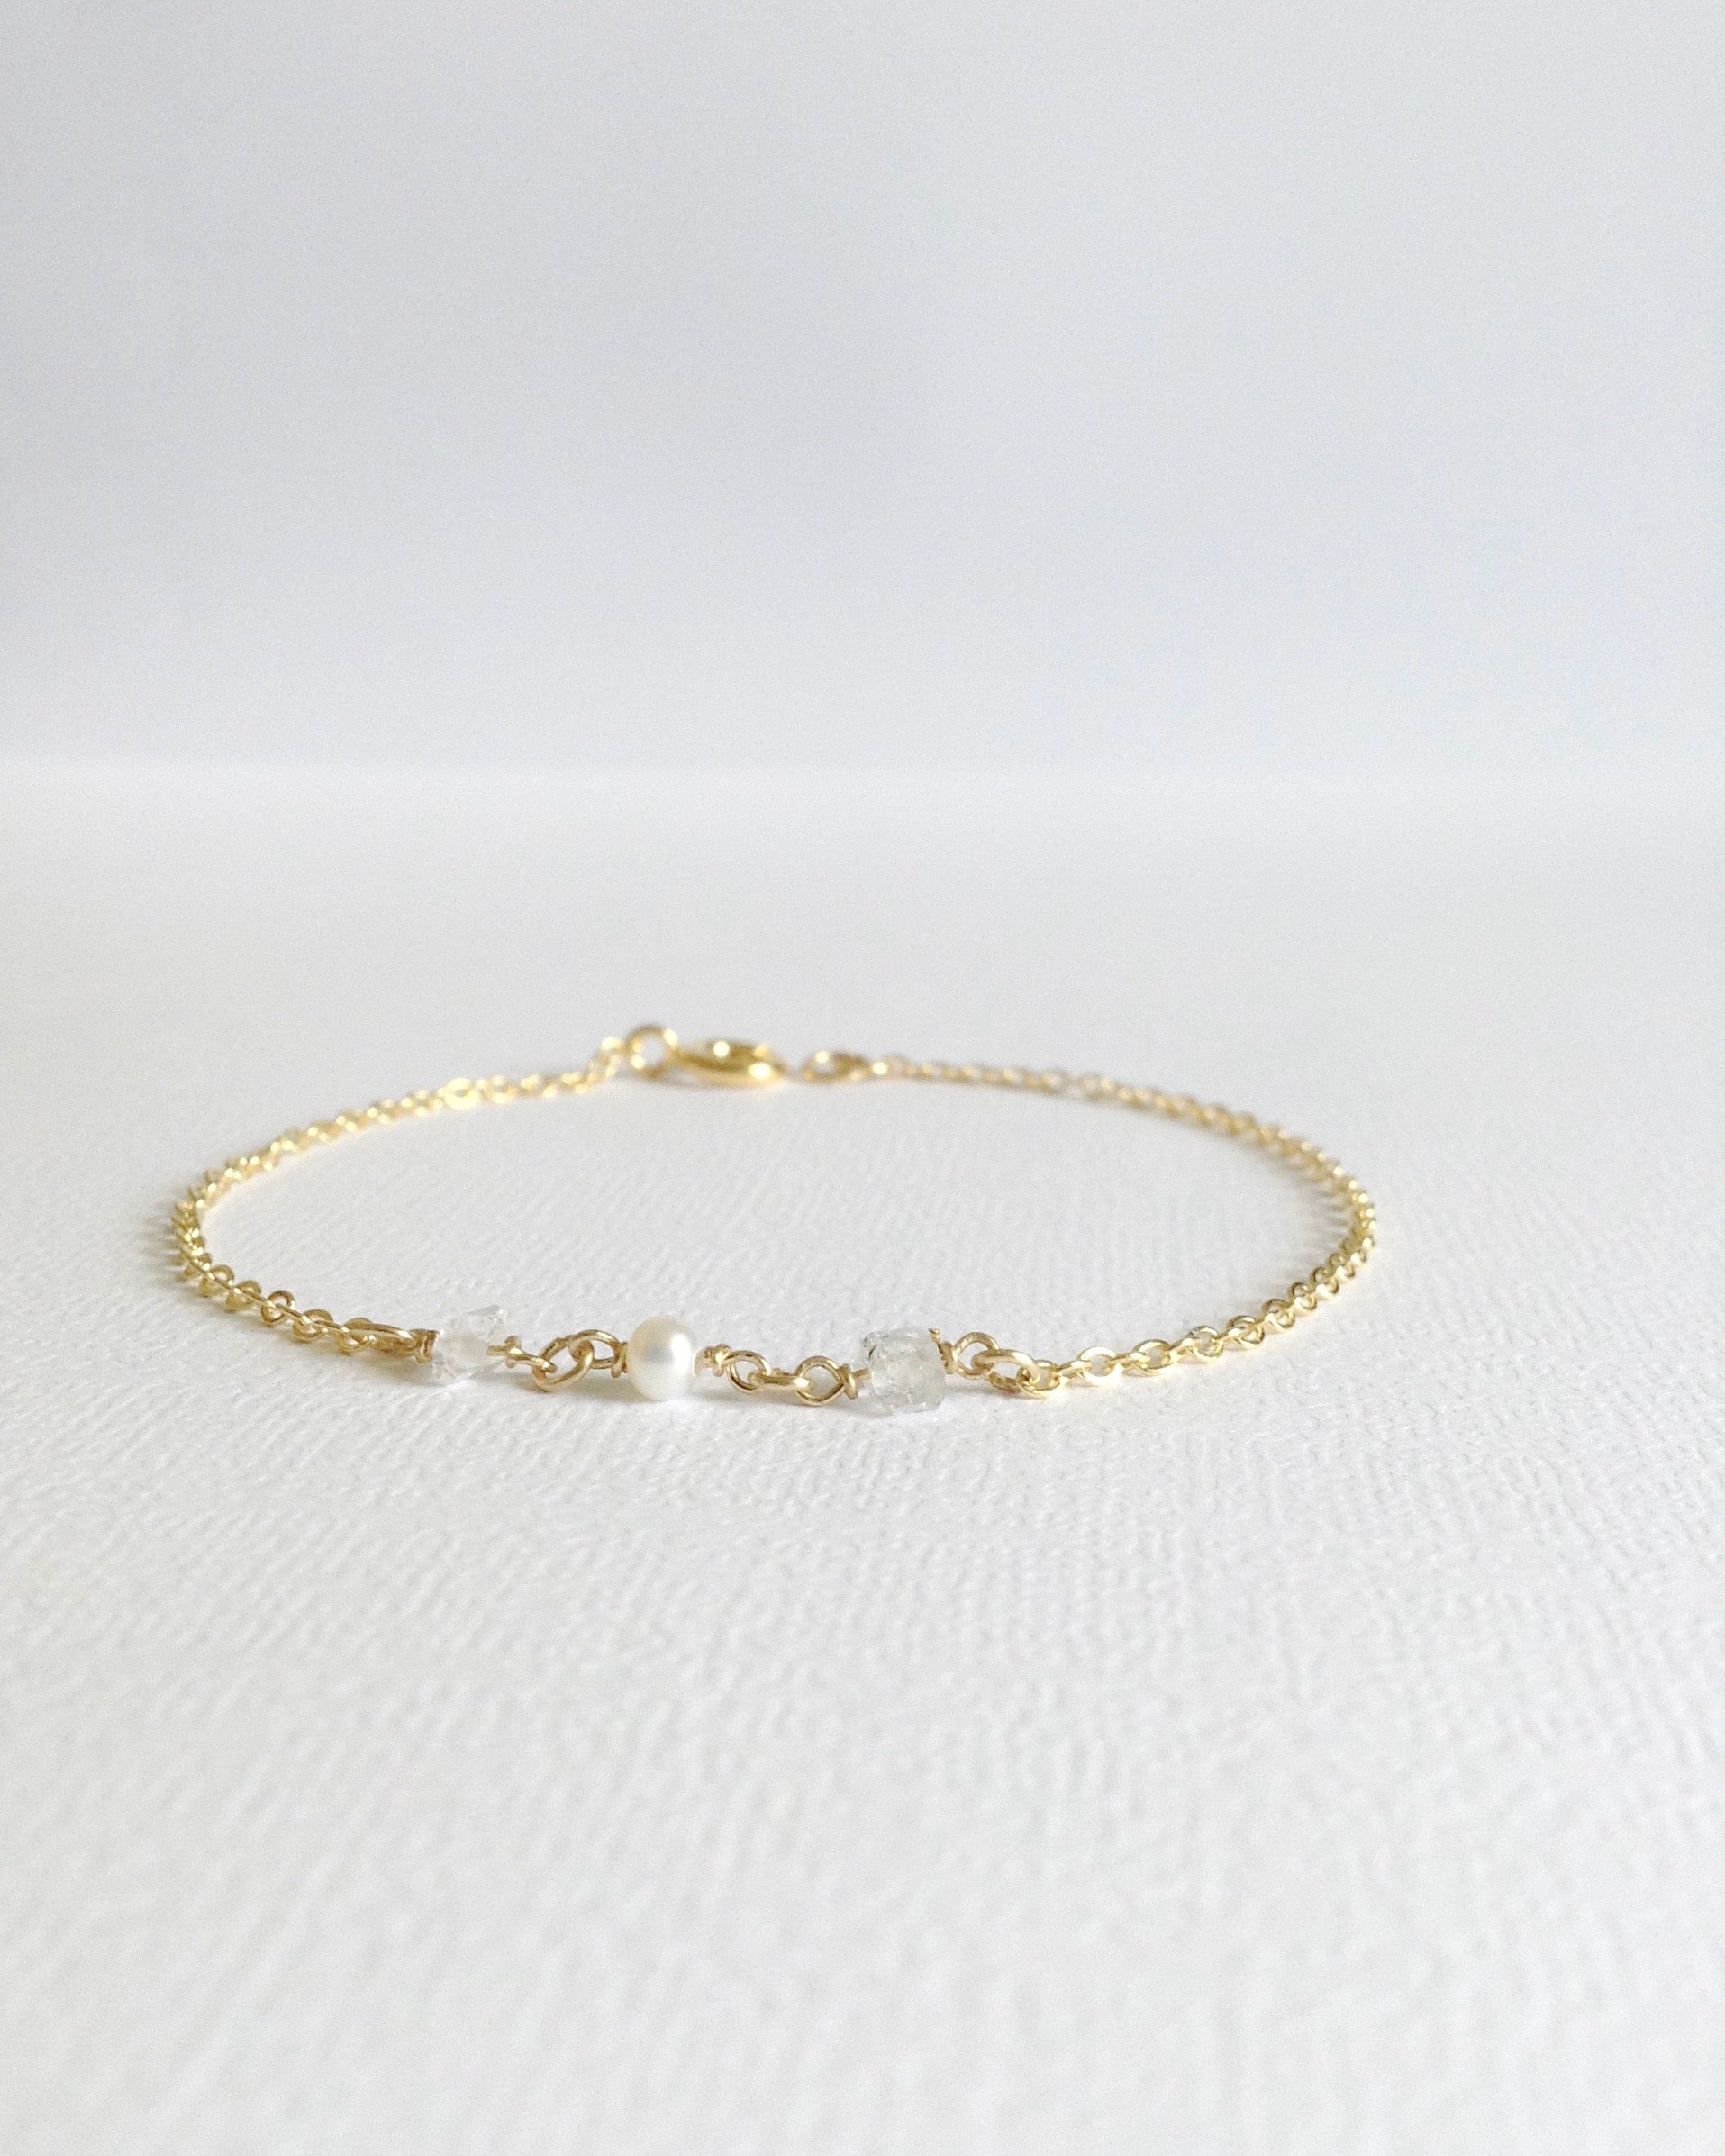 Tiny Herkimer Diamond Pearl Bracelet | Simple Dainty Bracelet | IB Jewelry